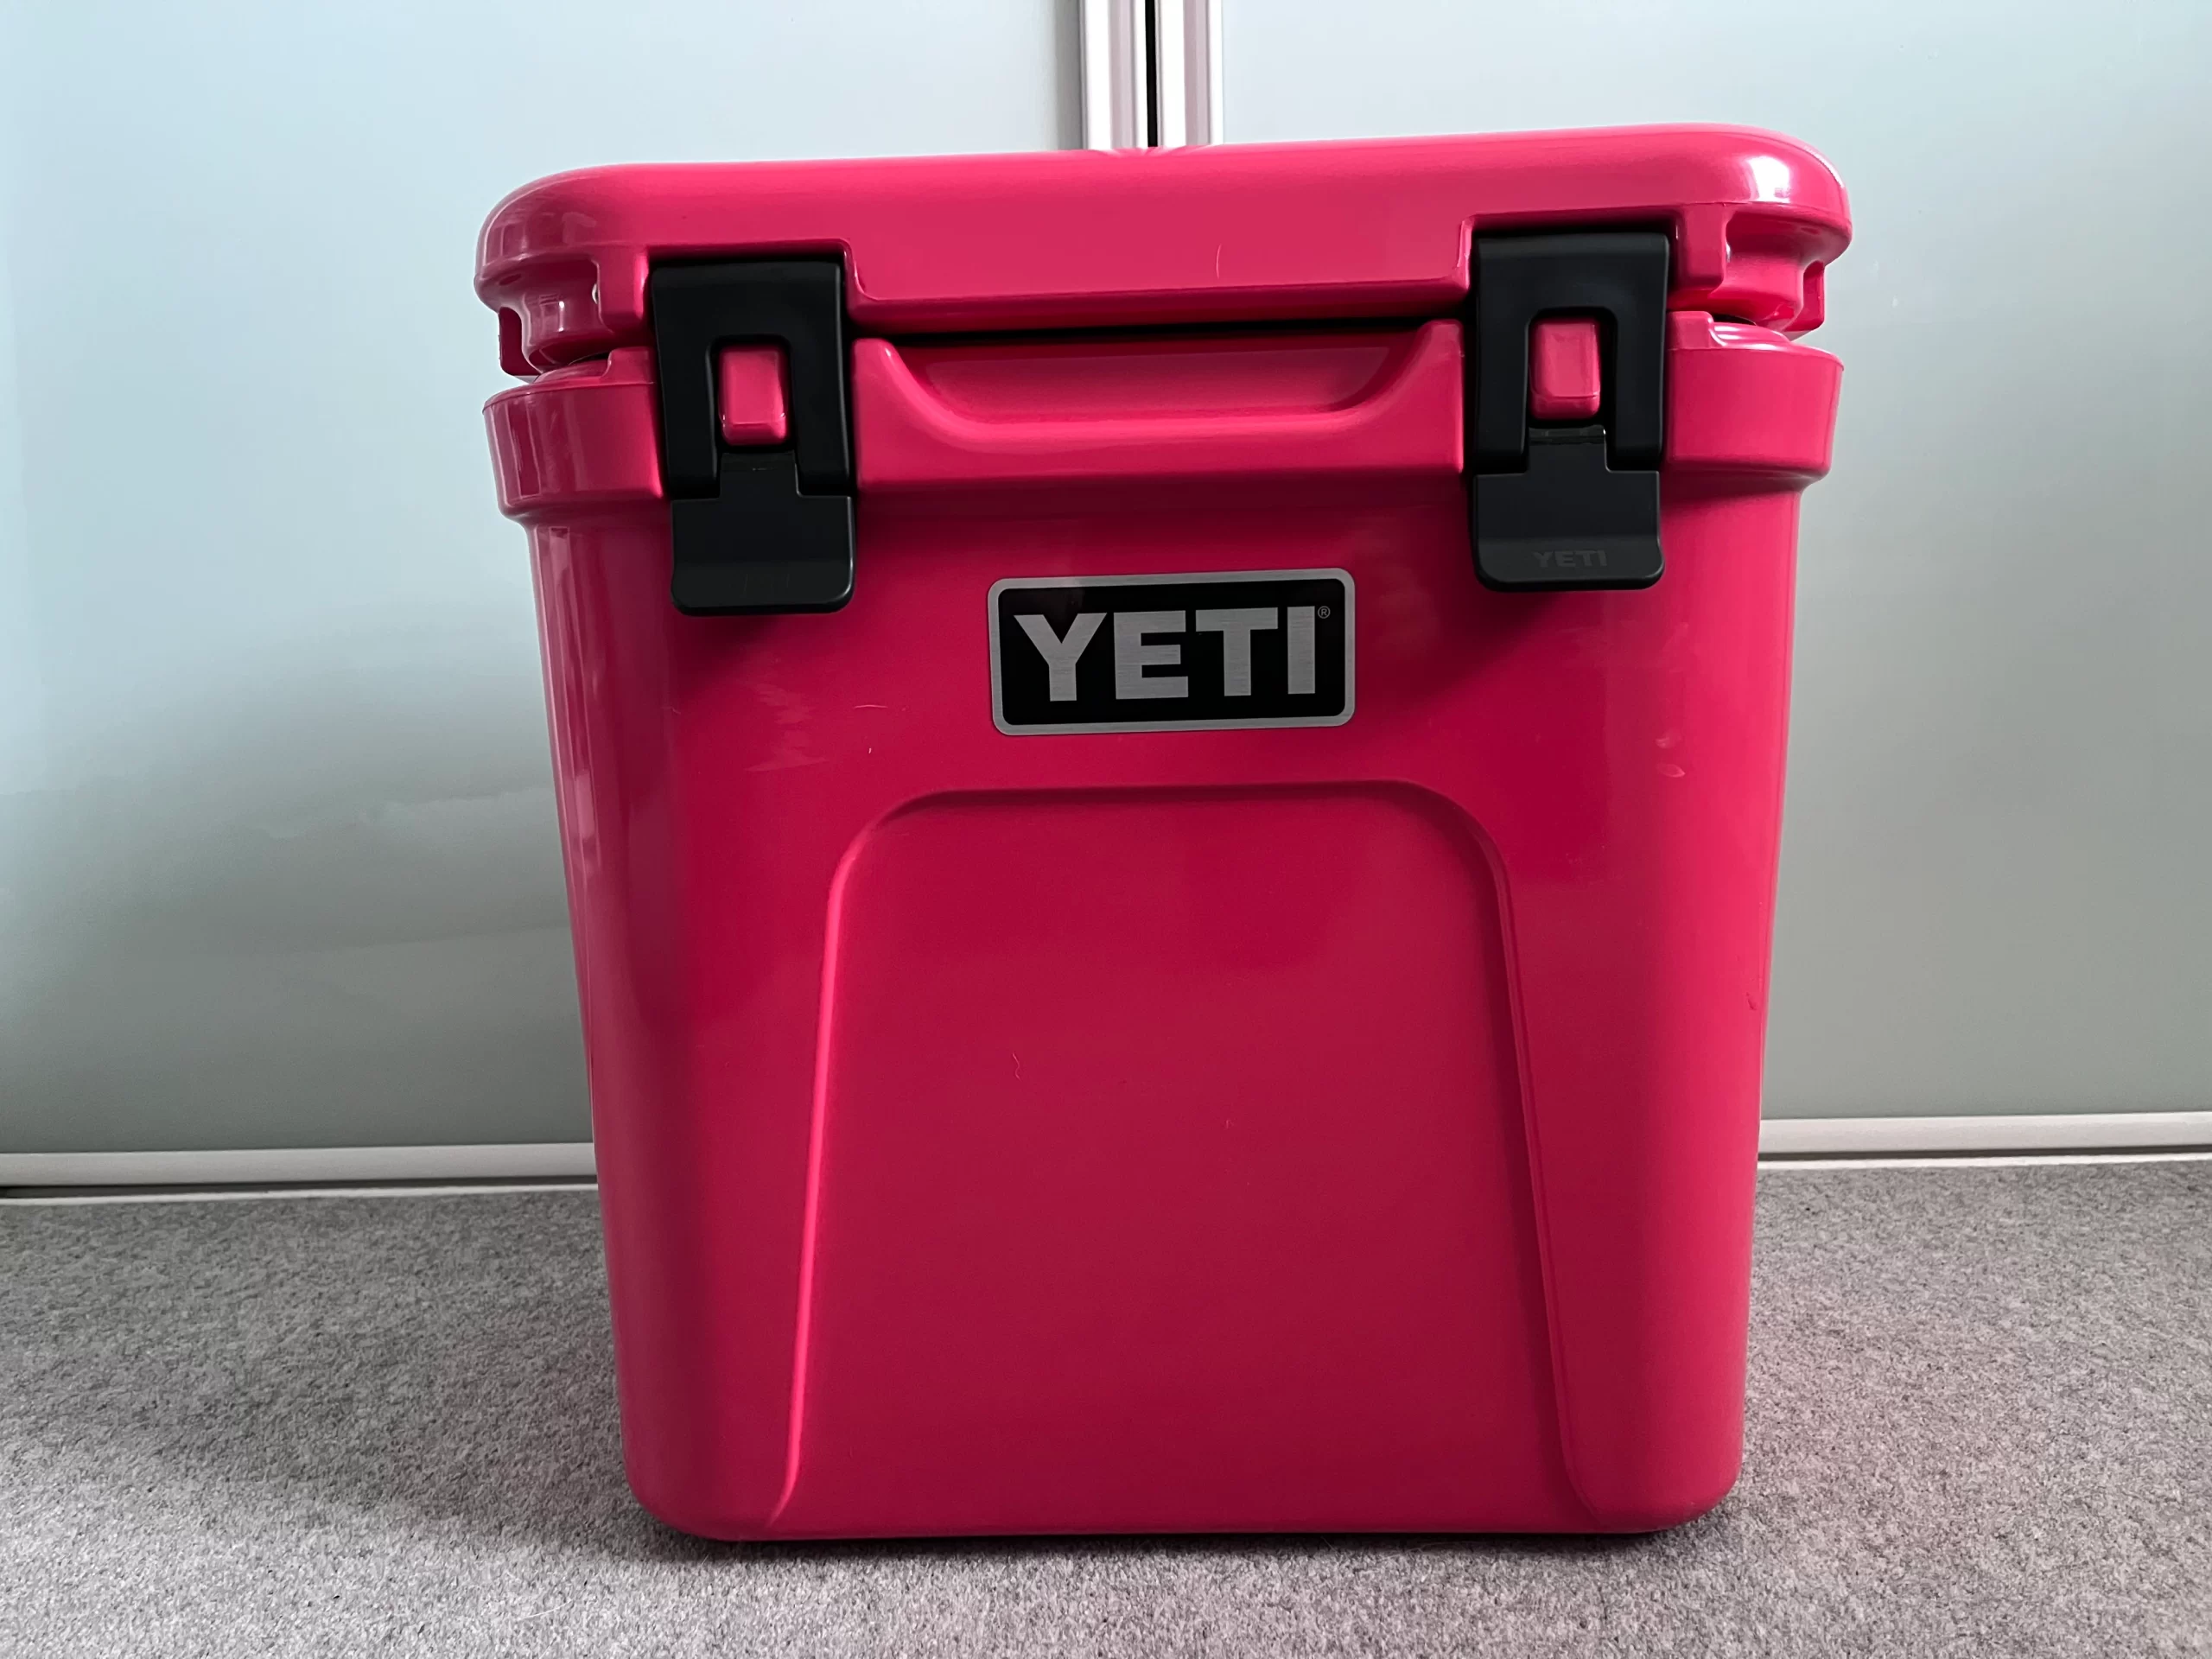 YETI Roadie 24 Cooler, Bimini Pink–